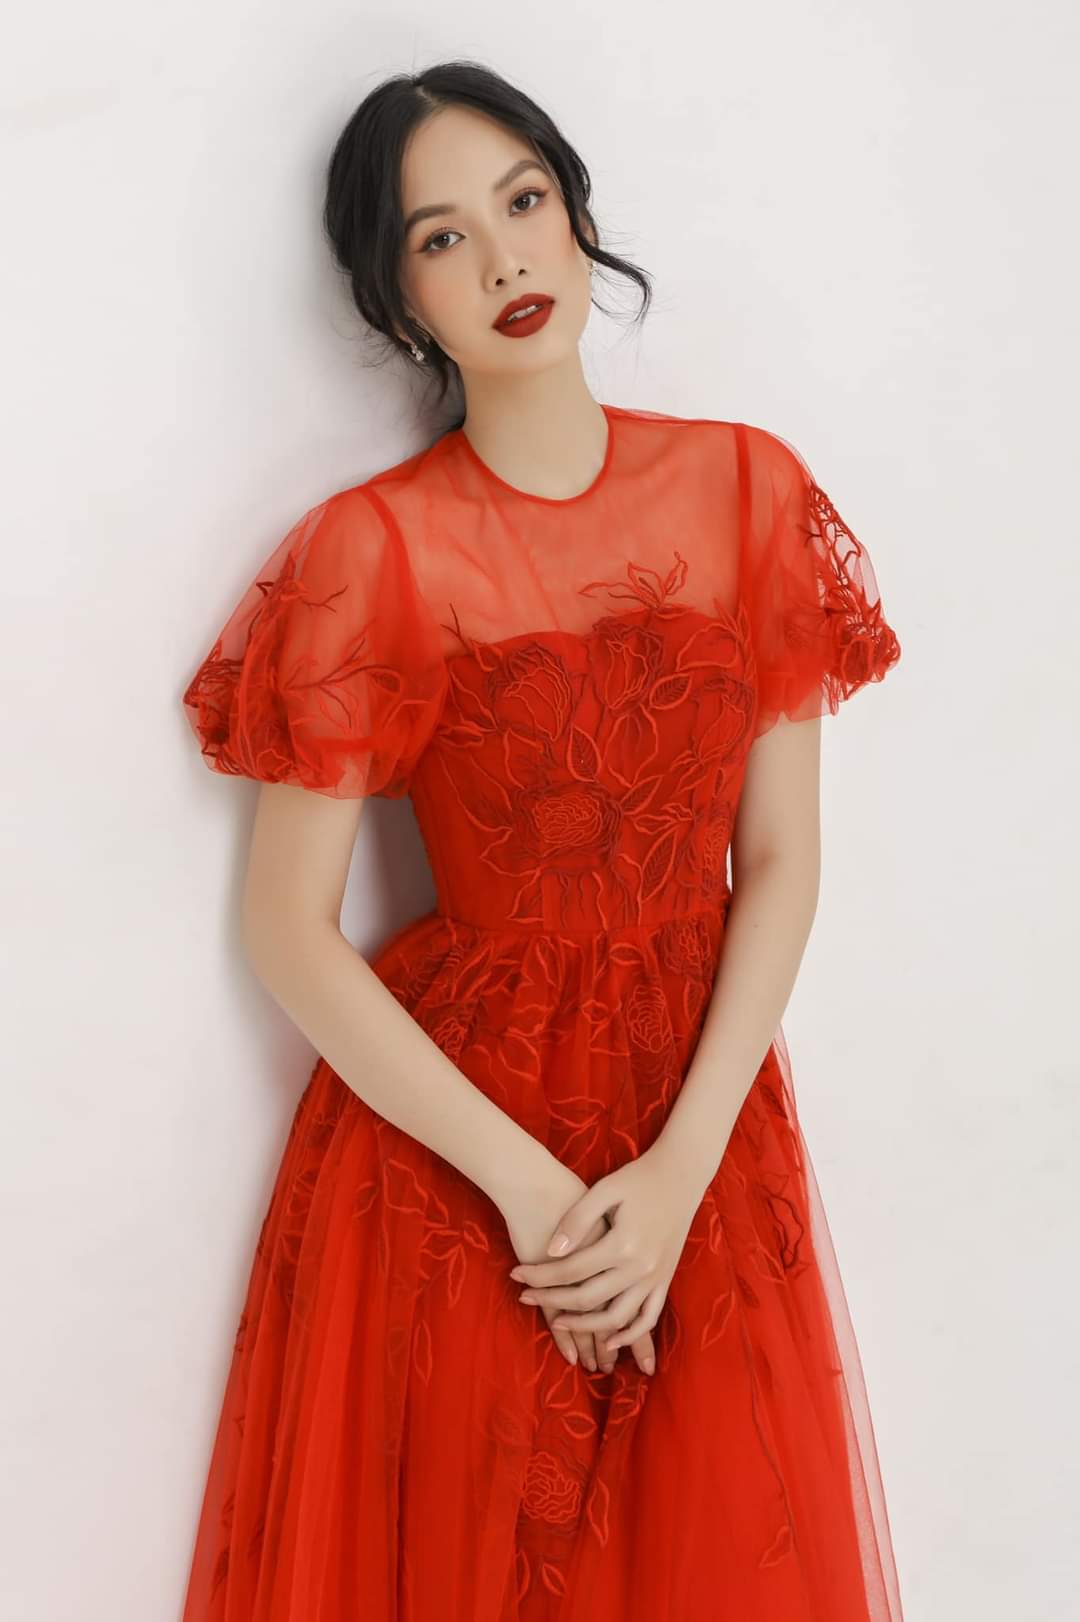 Nét đẹp 'mong manh tựa thiên thần' đậm chất Á Đông của cô gái có làn da đẹp nhất Hoa hậu Việt Nam 2020 - Ảnh 3